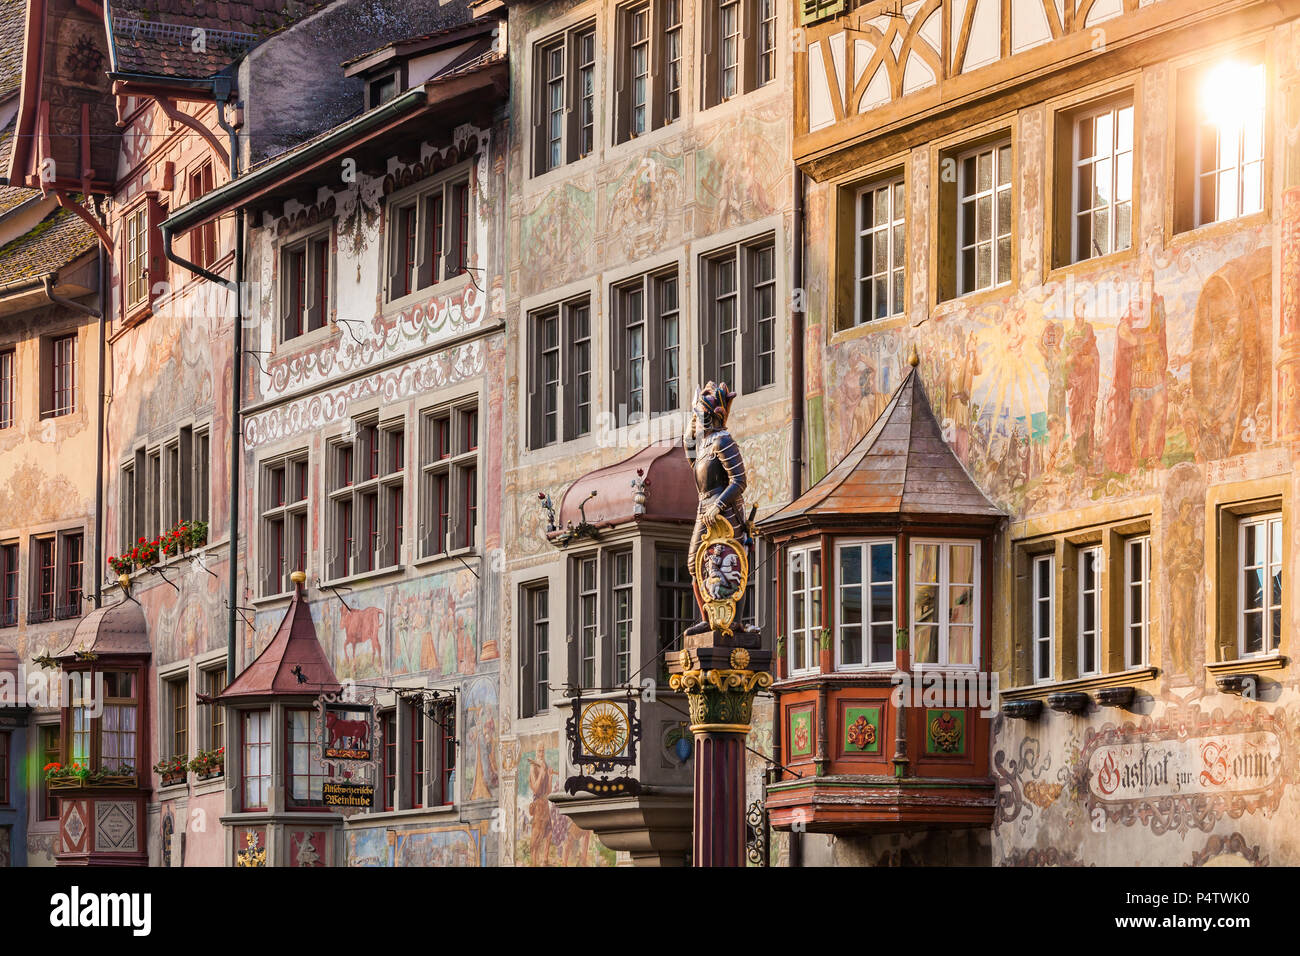 Schweiz, Stein am Rhein, Altstadt, historische Häuser am Rathausplatz, Fresken, Skulpturen am Brunnen Stockfoto